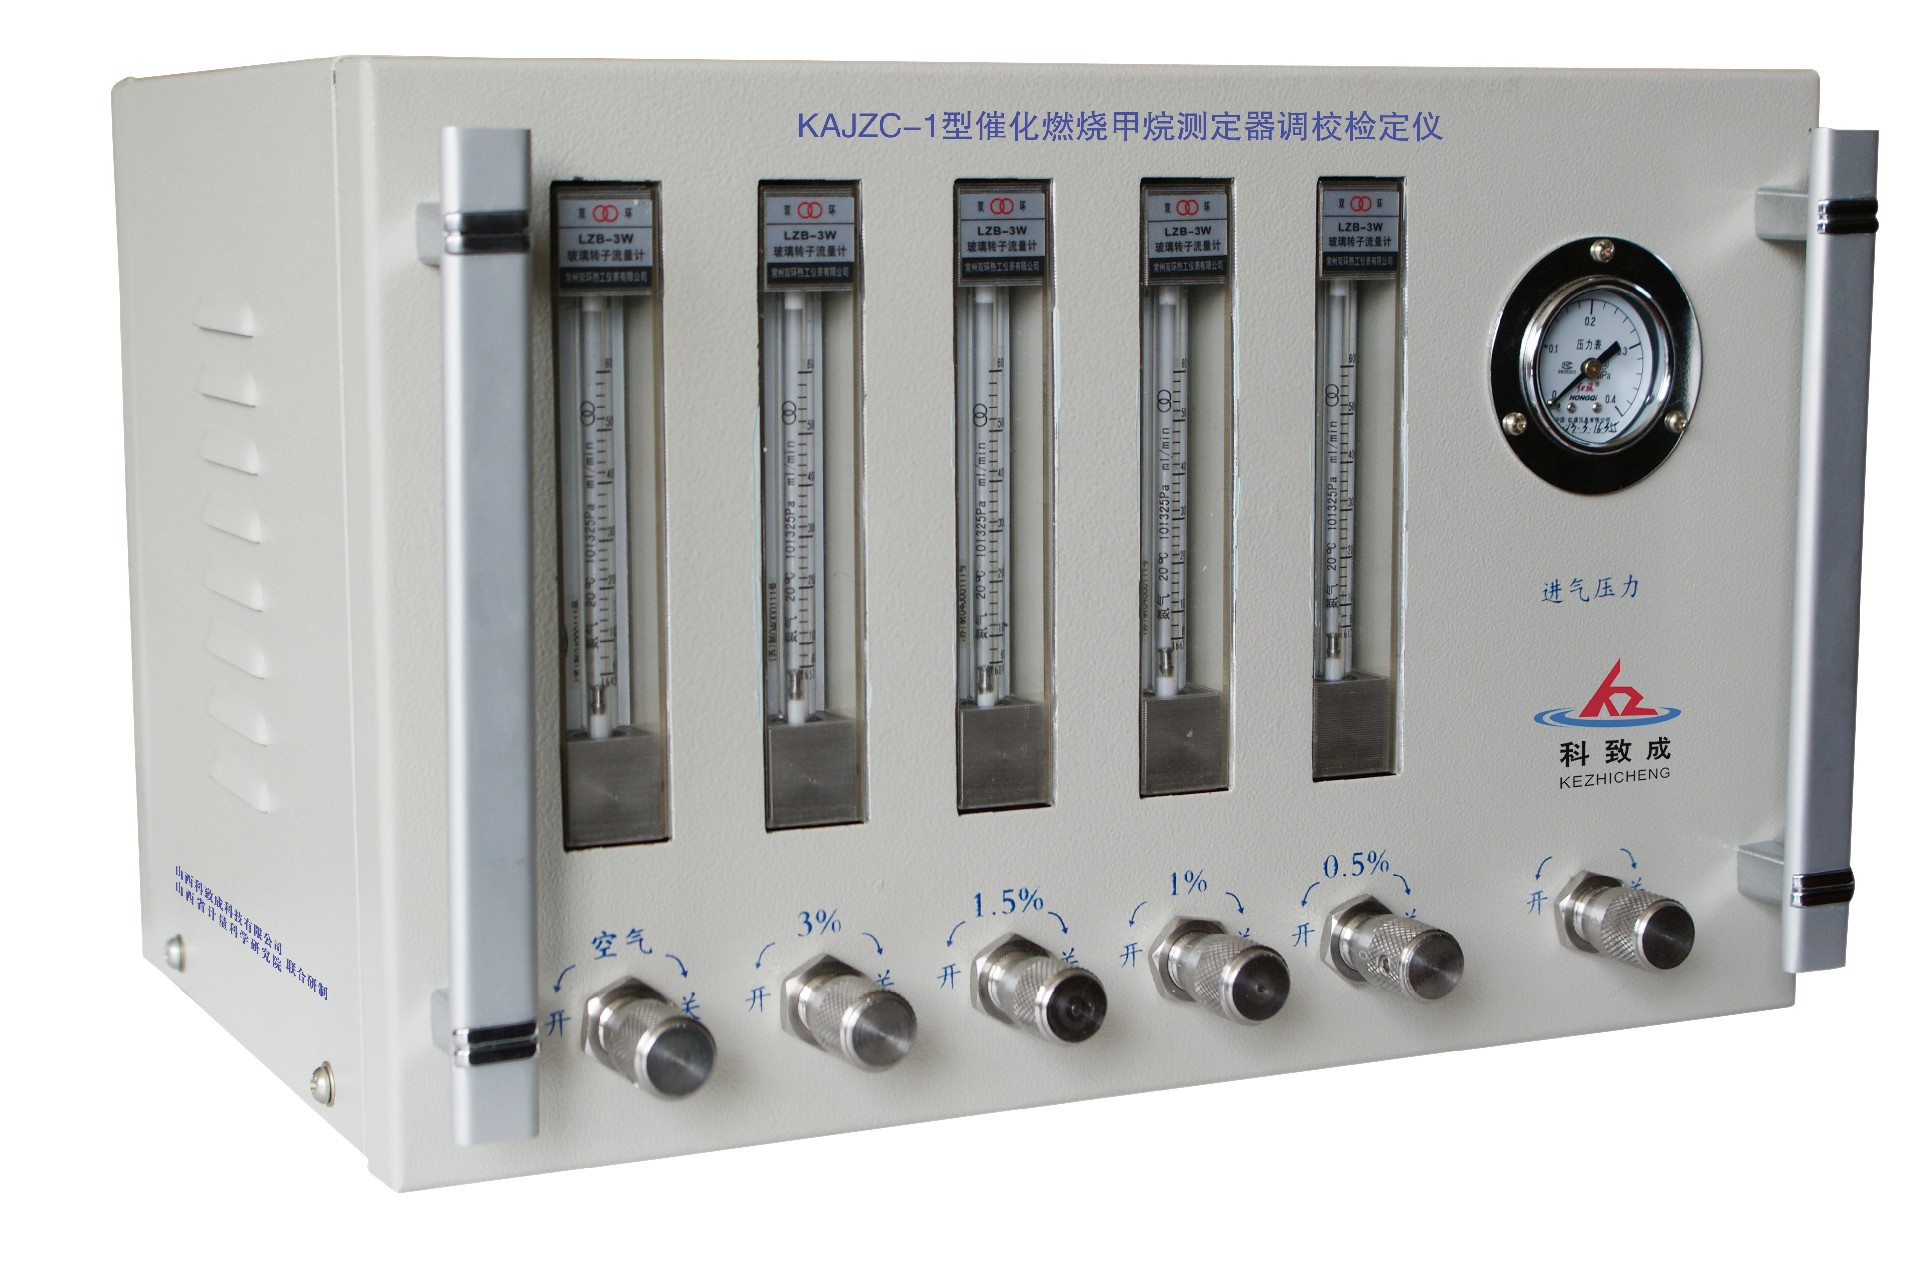 锡林郭勒KAJZC-1型催化燃烧甲烷测定器调校检定仪